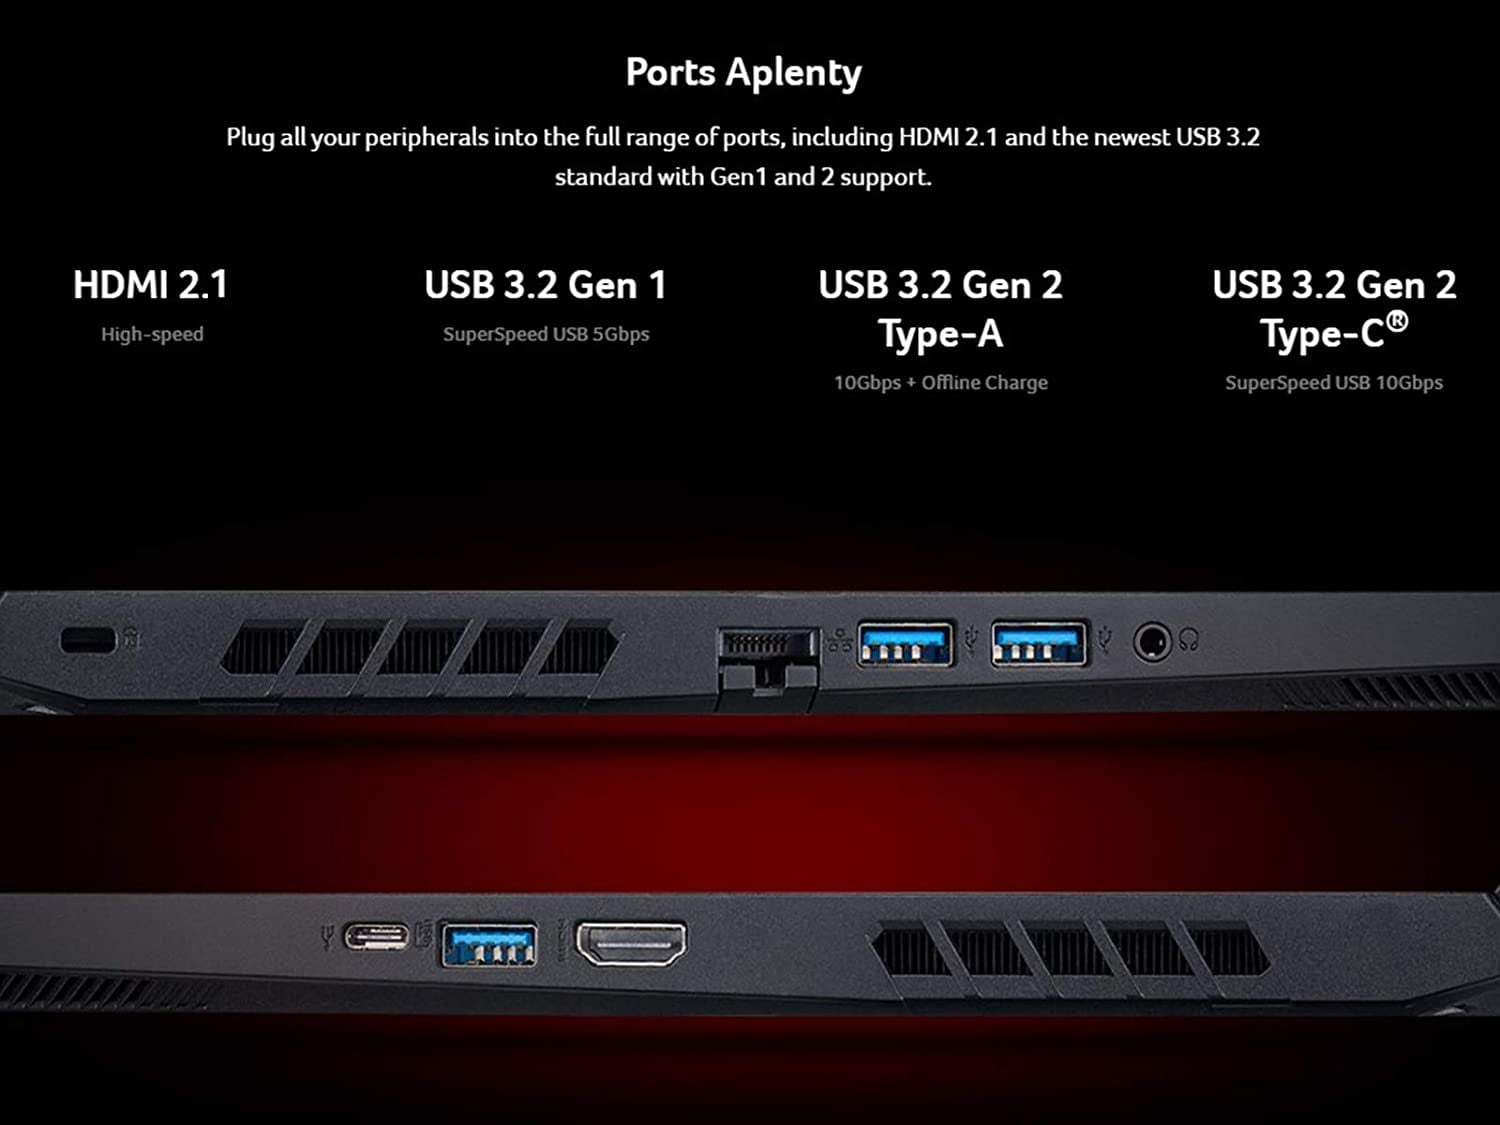 Acer Nitro 15.6" FHD 144Hz IPS Display Gaming Laptop AMD Ryzen 5600H  NVIDIA GeForce RTX 3060 16GB RAM 512GB SSD +1TB HDD| Backlit Keyboard 